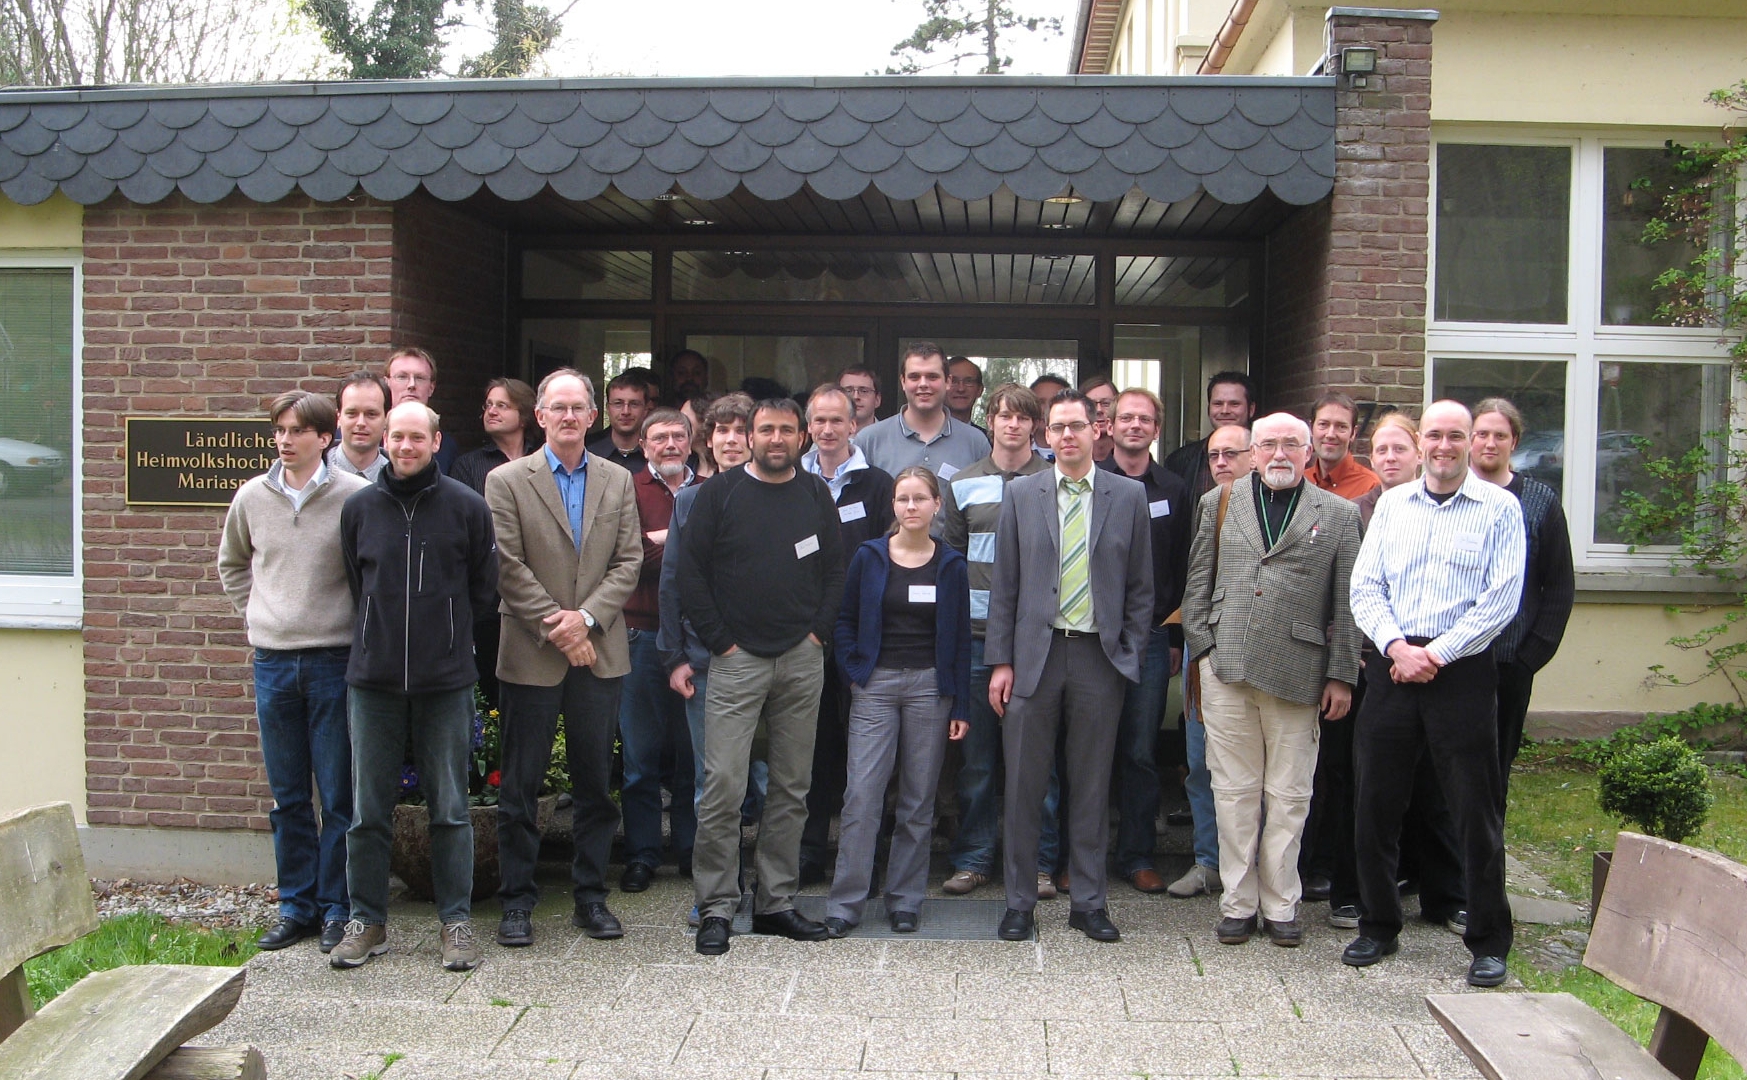 Teilnehmer des Datenmanagement Workshops in Göttingen, April 2007